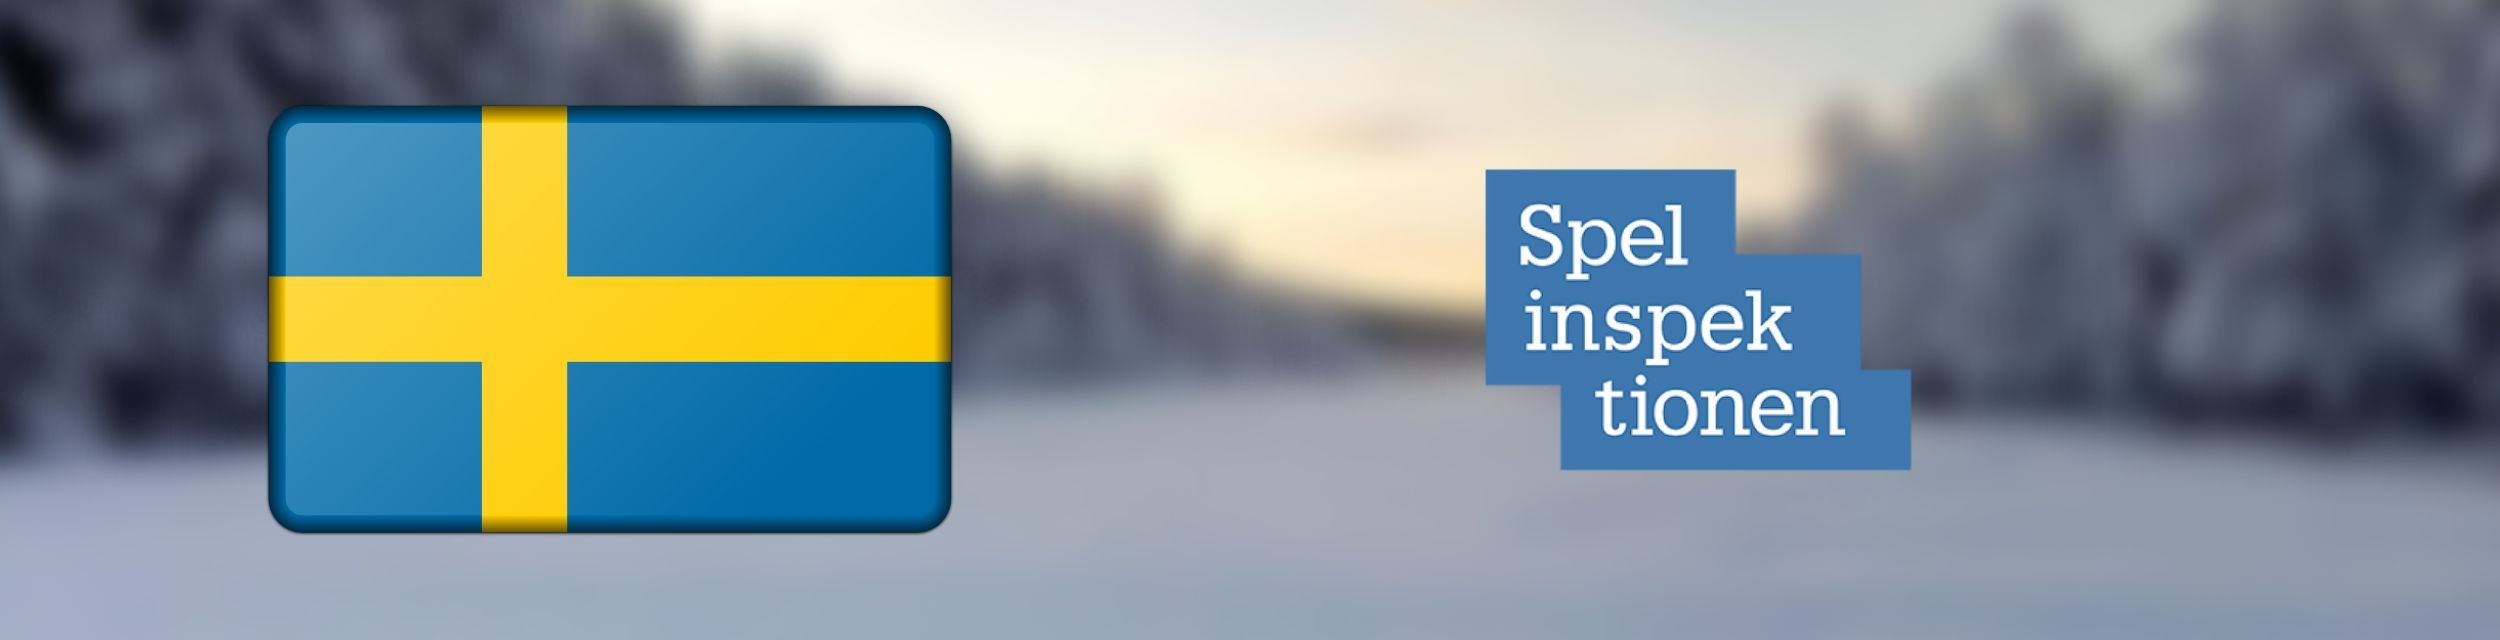 Svensk flagga och Spelinspektionens logga